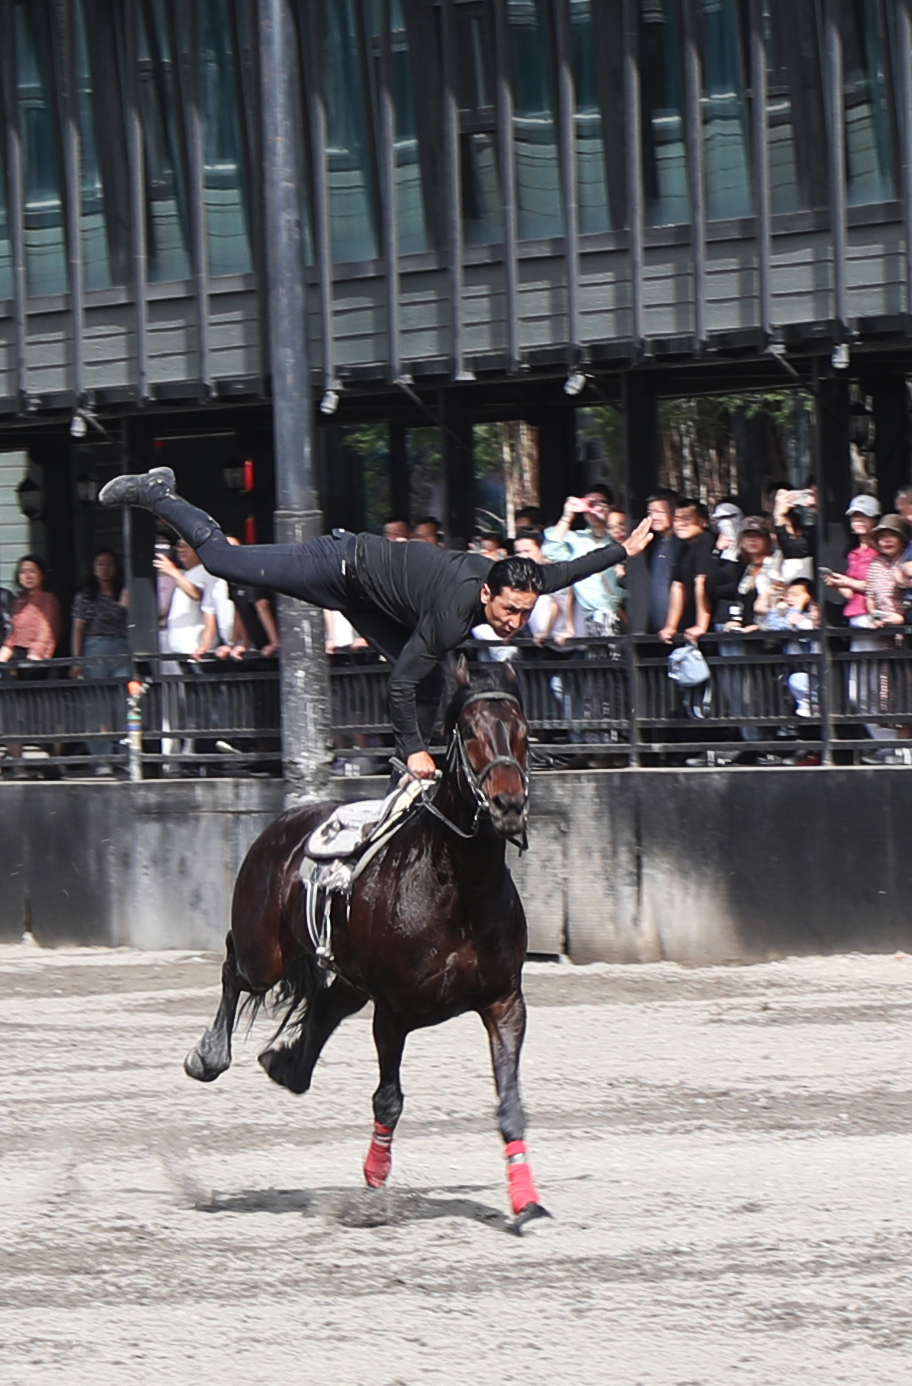 A rider performs a stunt on horseback at a horse base in Urumqi, Xinjiang. /CGTN